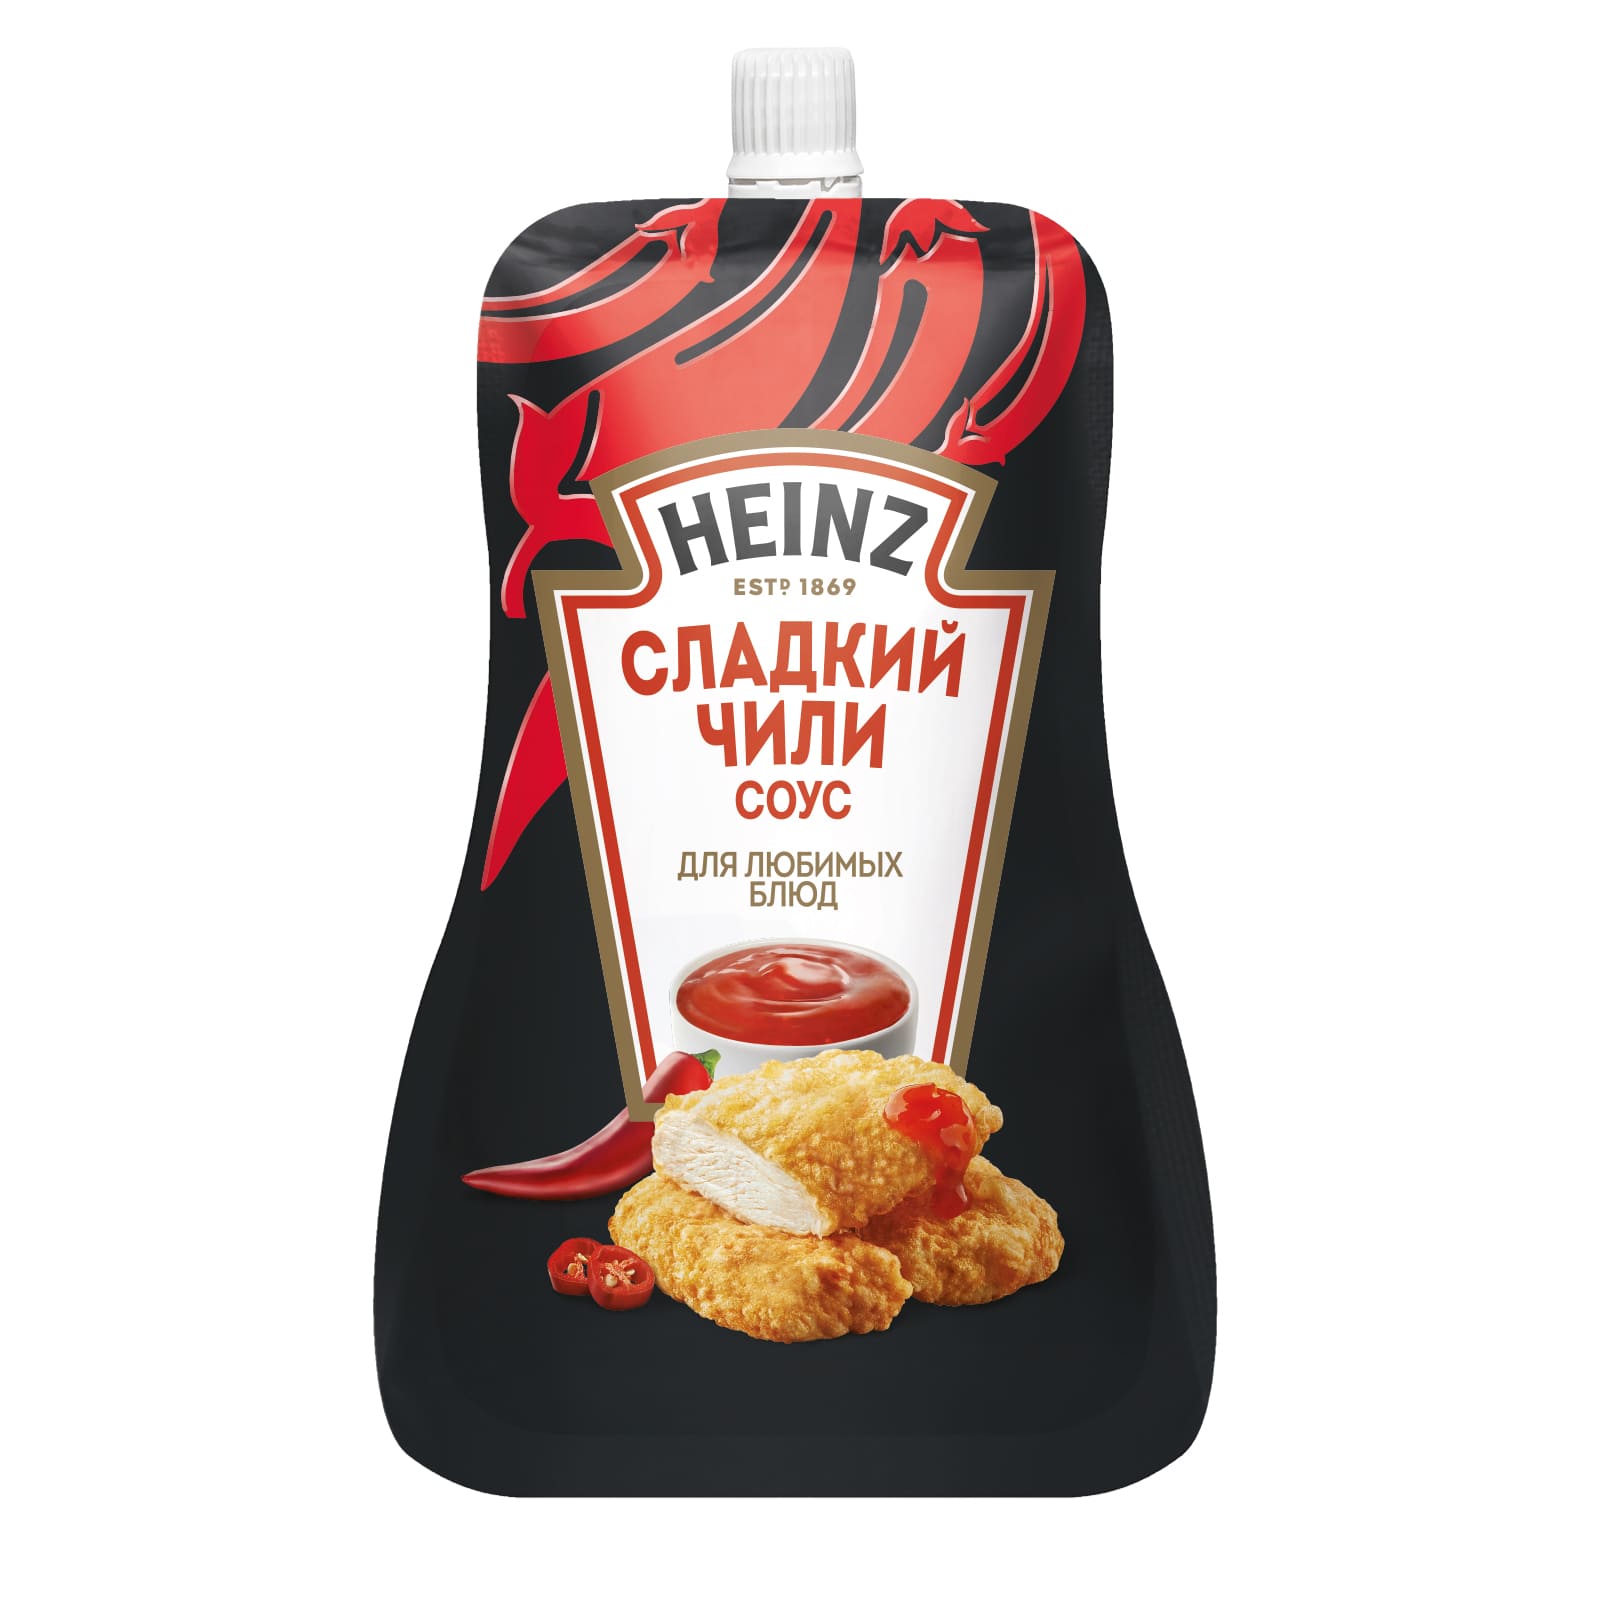 Соус Heinz сладкий чили, 200 г - купить в Мегамаркет, цена на Мегамаркет